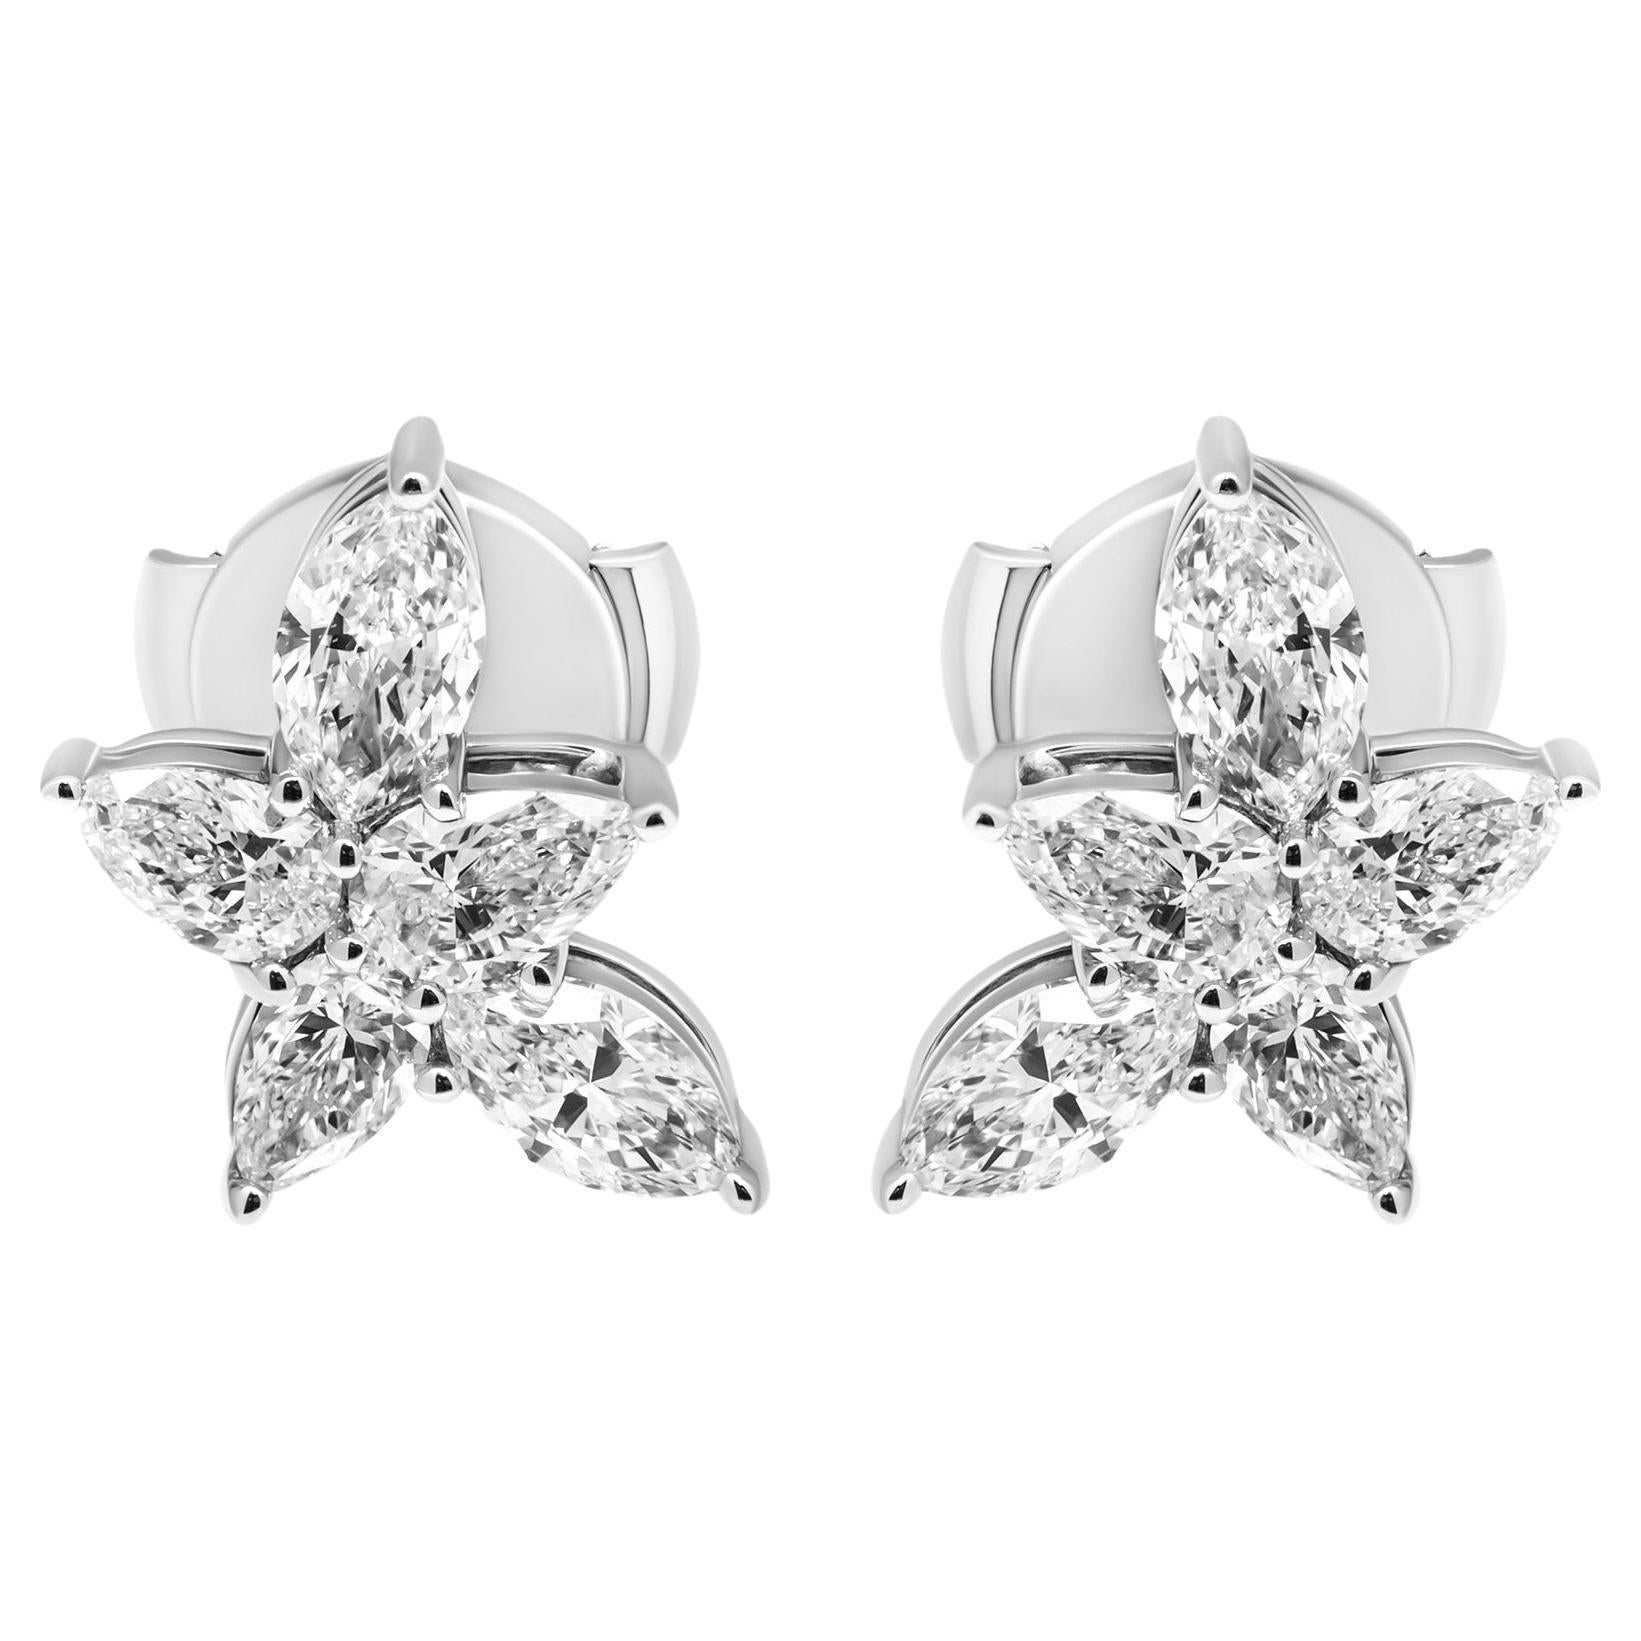 Cluster Diamond Earrings in 18K White Gold 